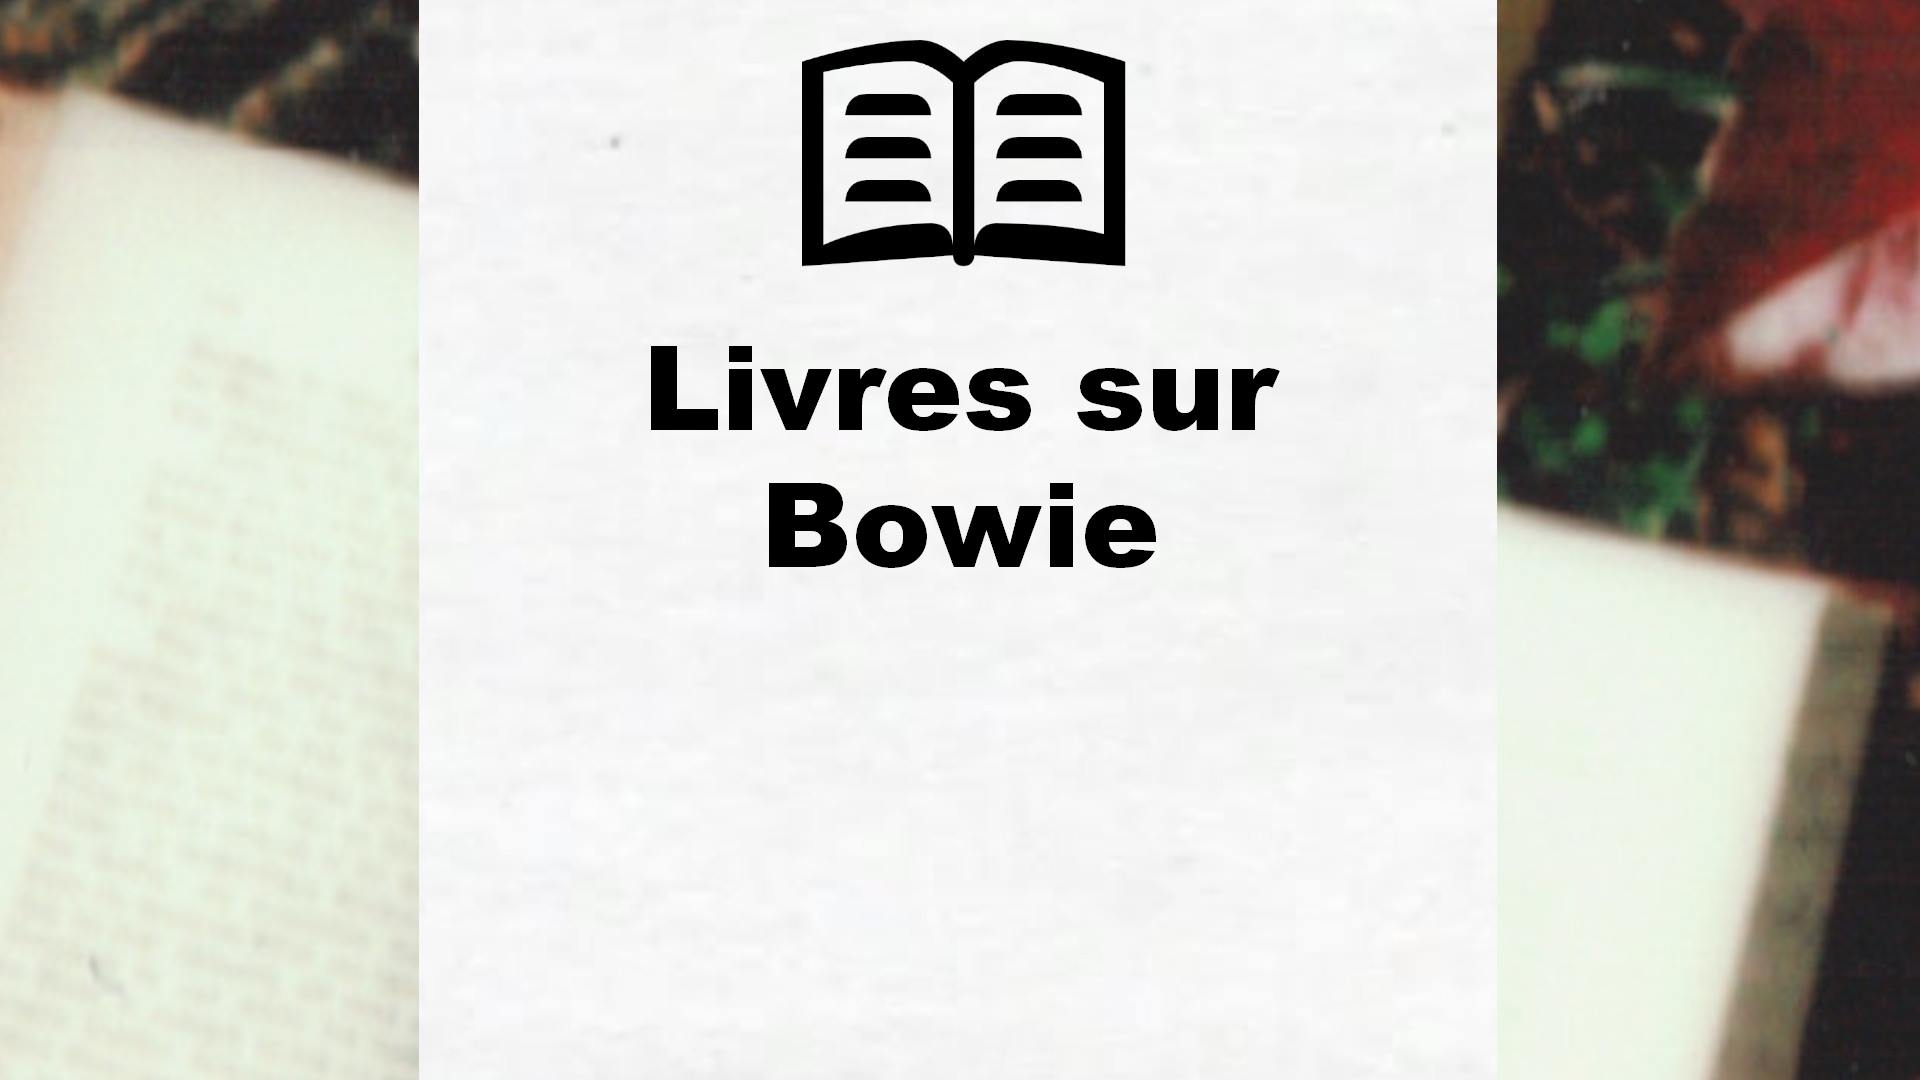 Livres sur Bowie